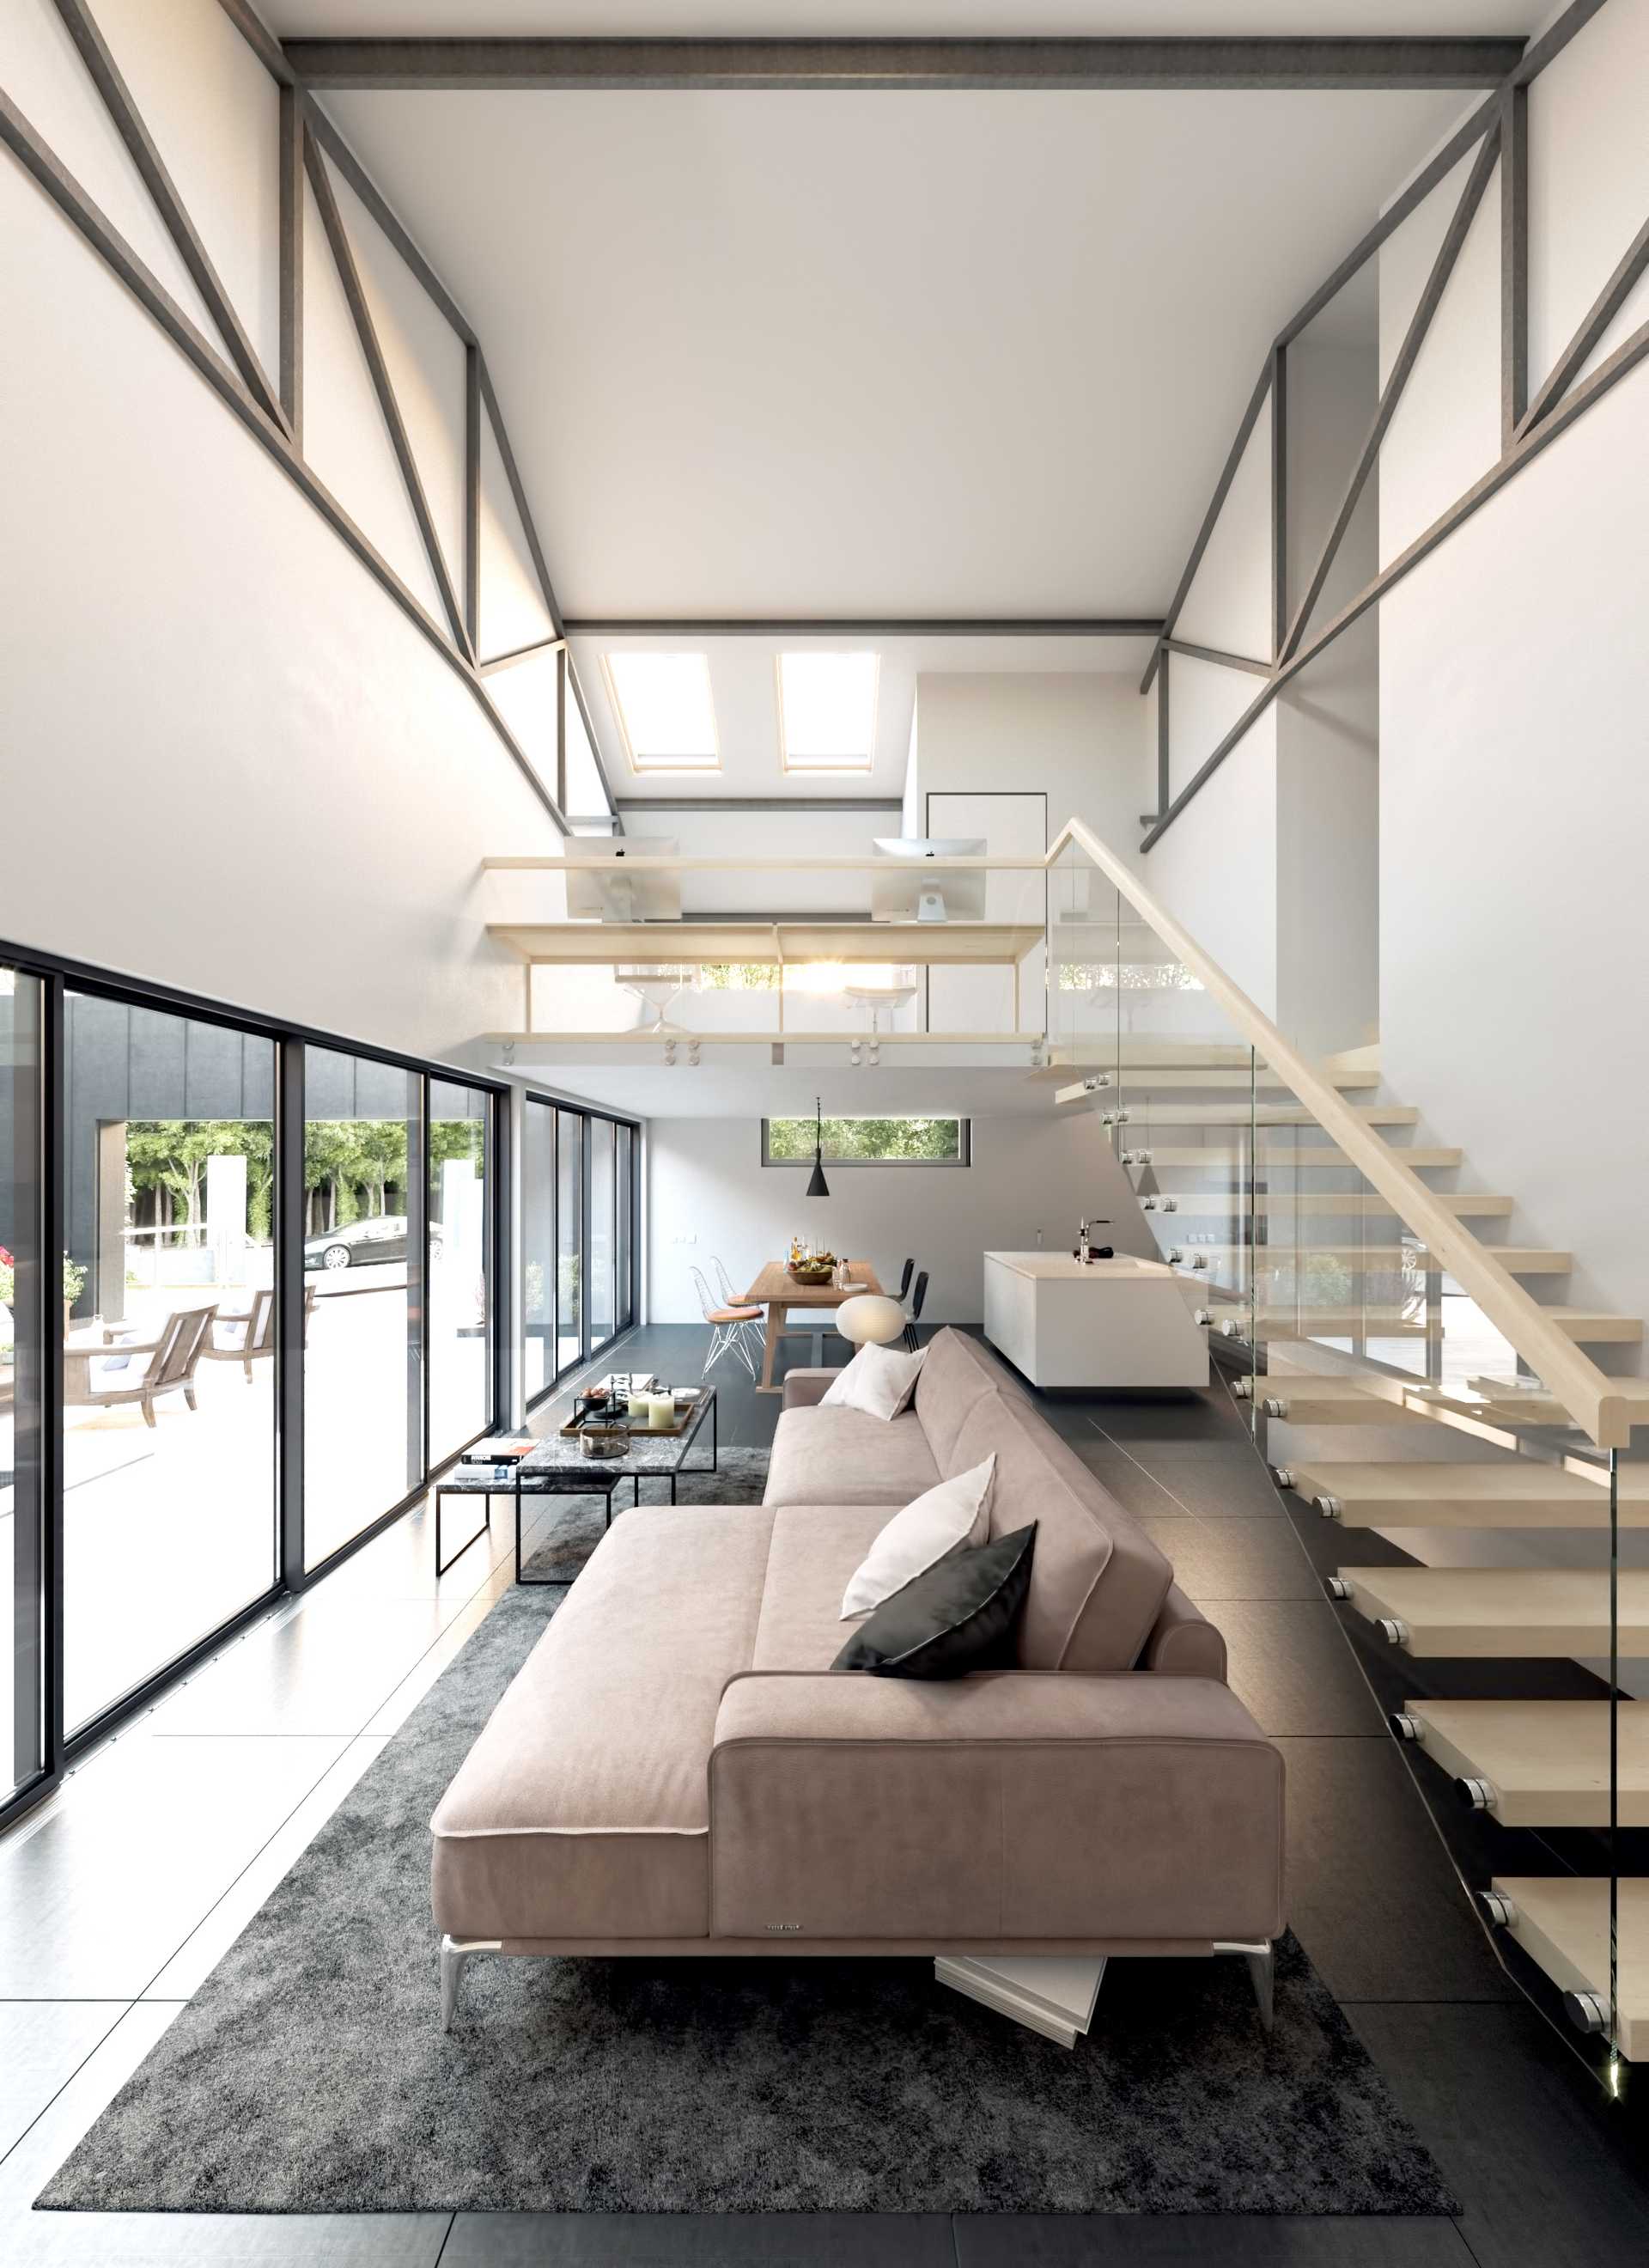 Design of a contemporary villa in Aix-en-Provence by an interior designer